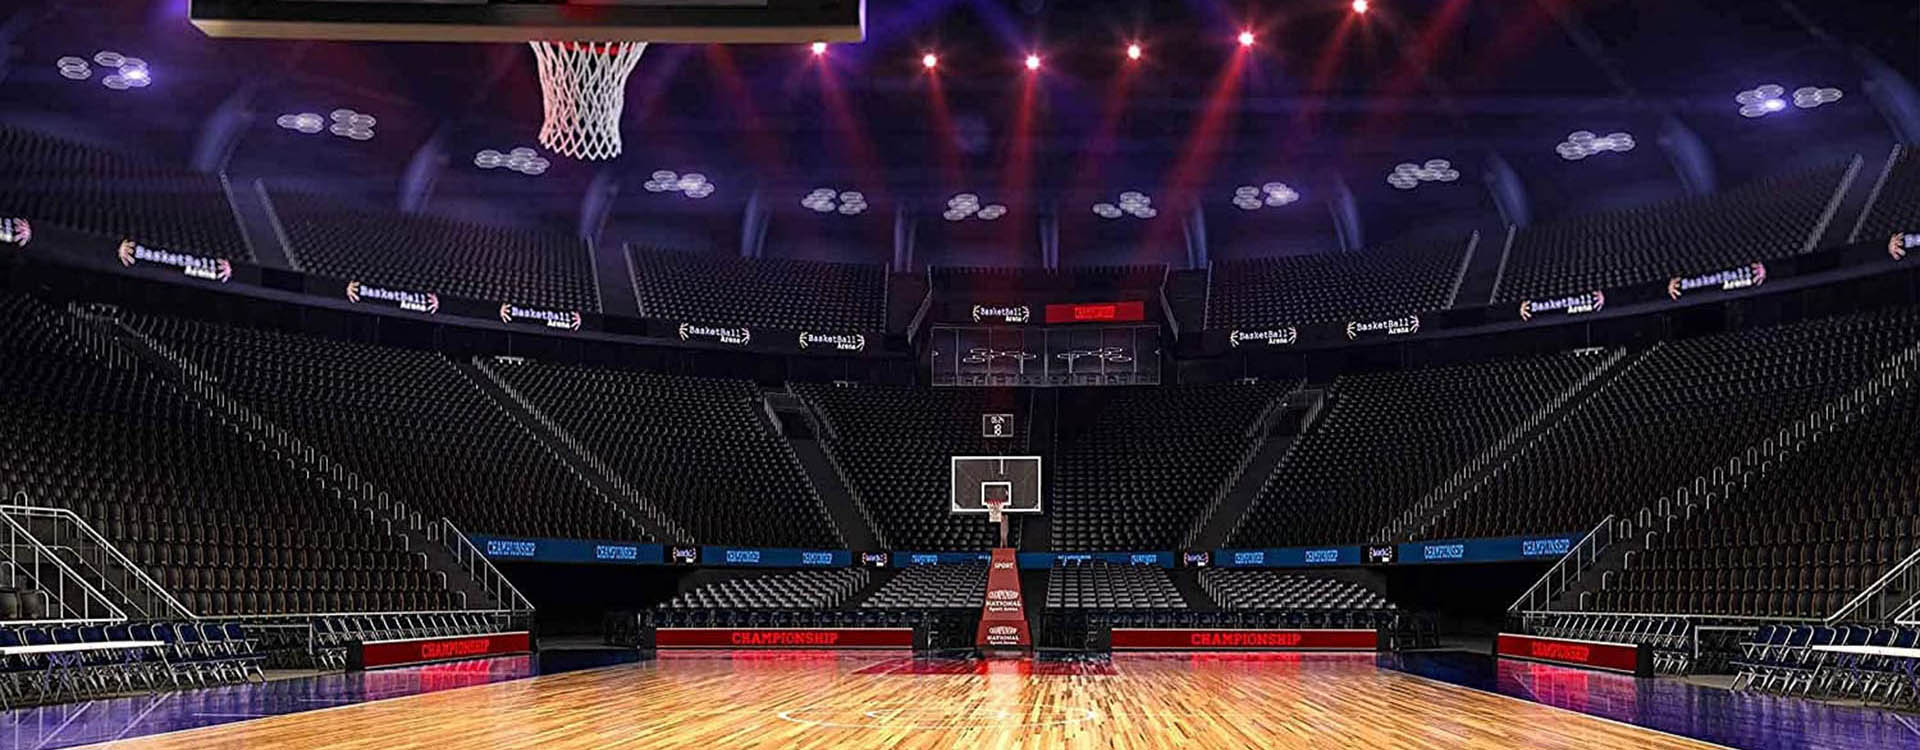 basketball-field-led-lighting-1